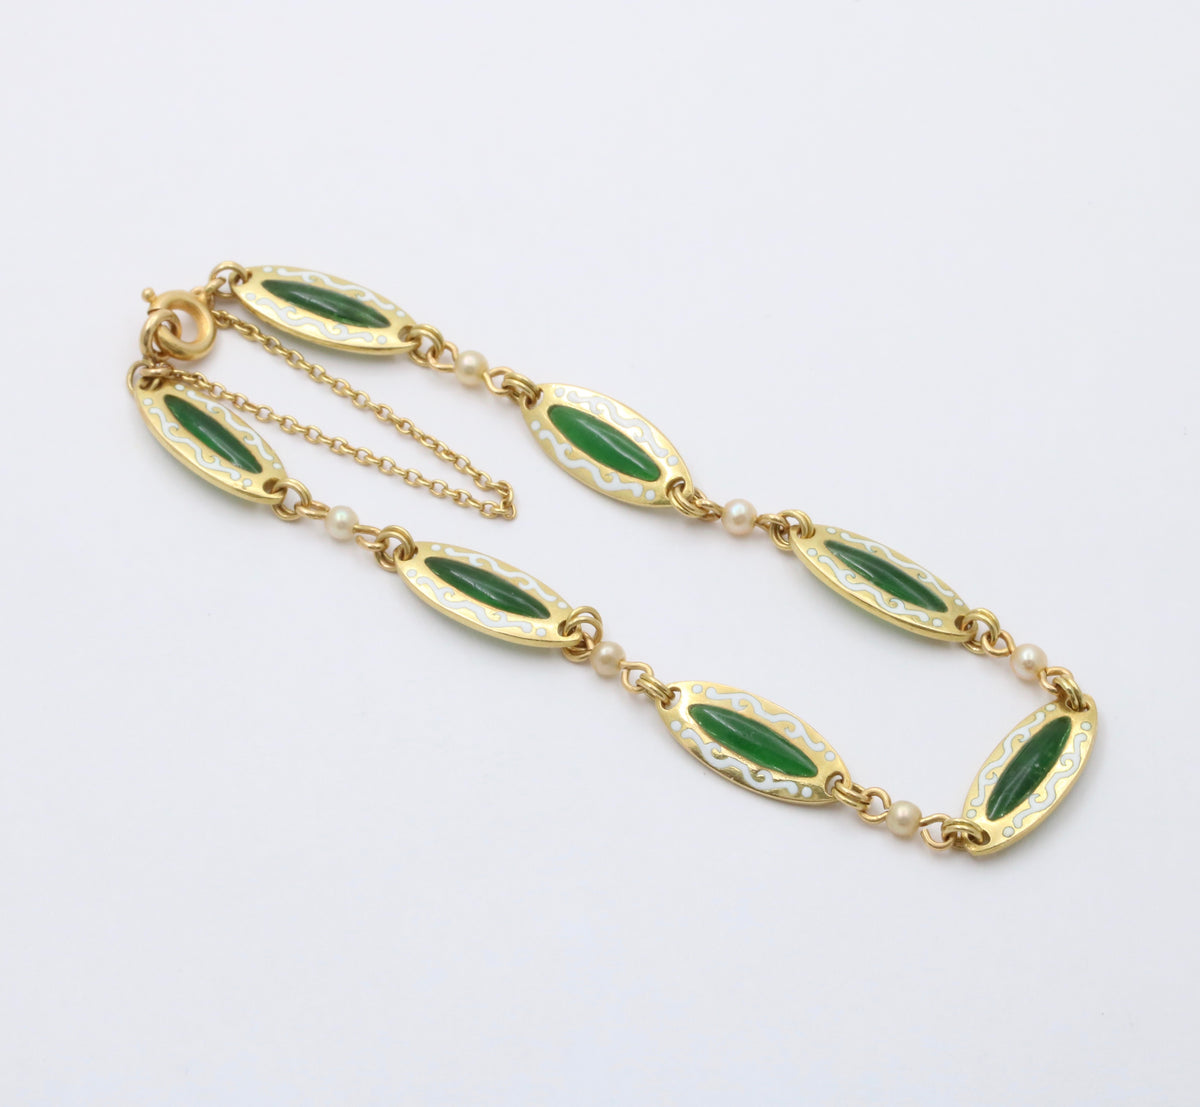 Antique 18K Gold and Plique A Jour Enamel Bracelet, Art Nouveau Pearl Bracelet